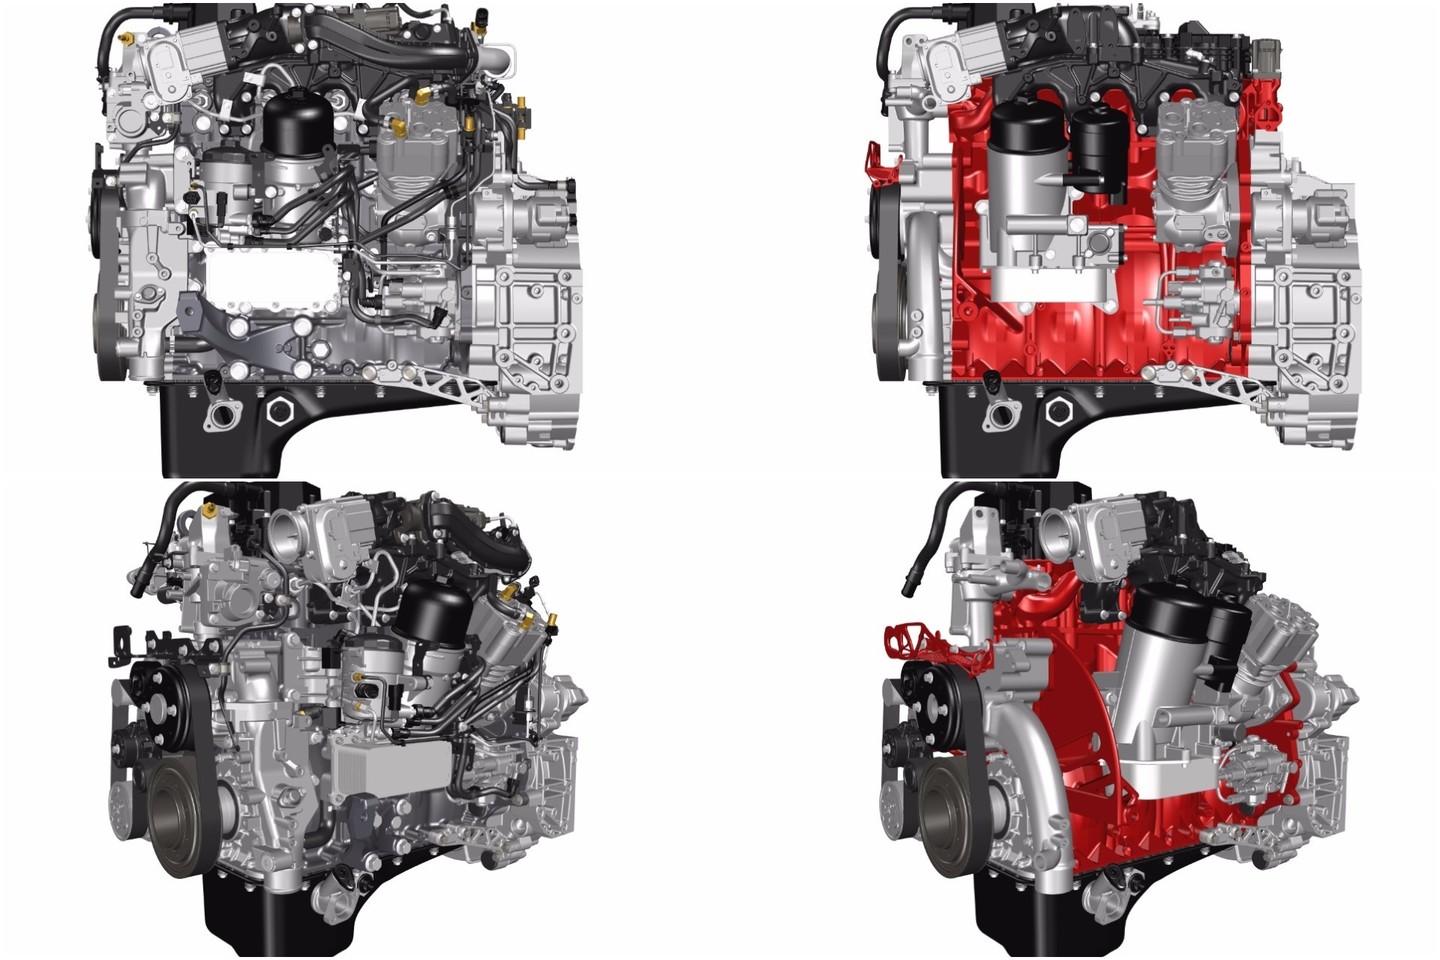 3D metalo spausdintuvais „Renault“ jau gamina sudėtingas variklių detales.<br>Gamintojo nuotr.